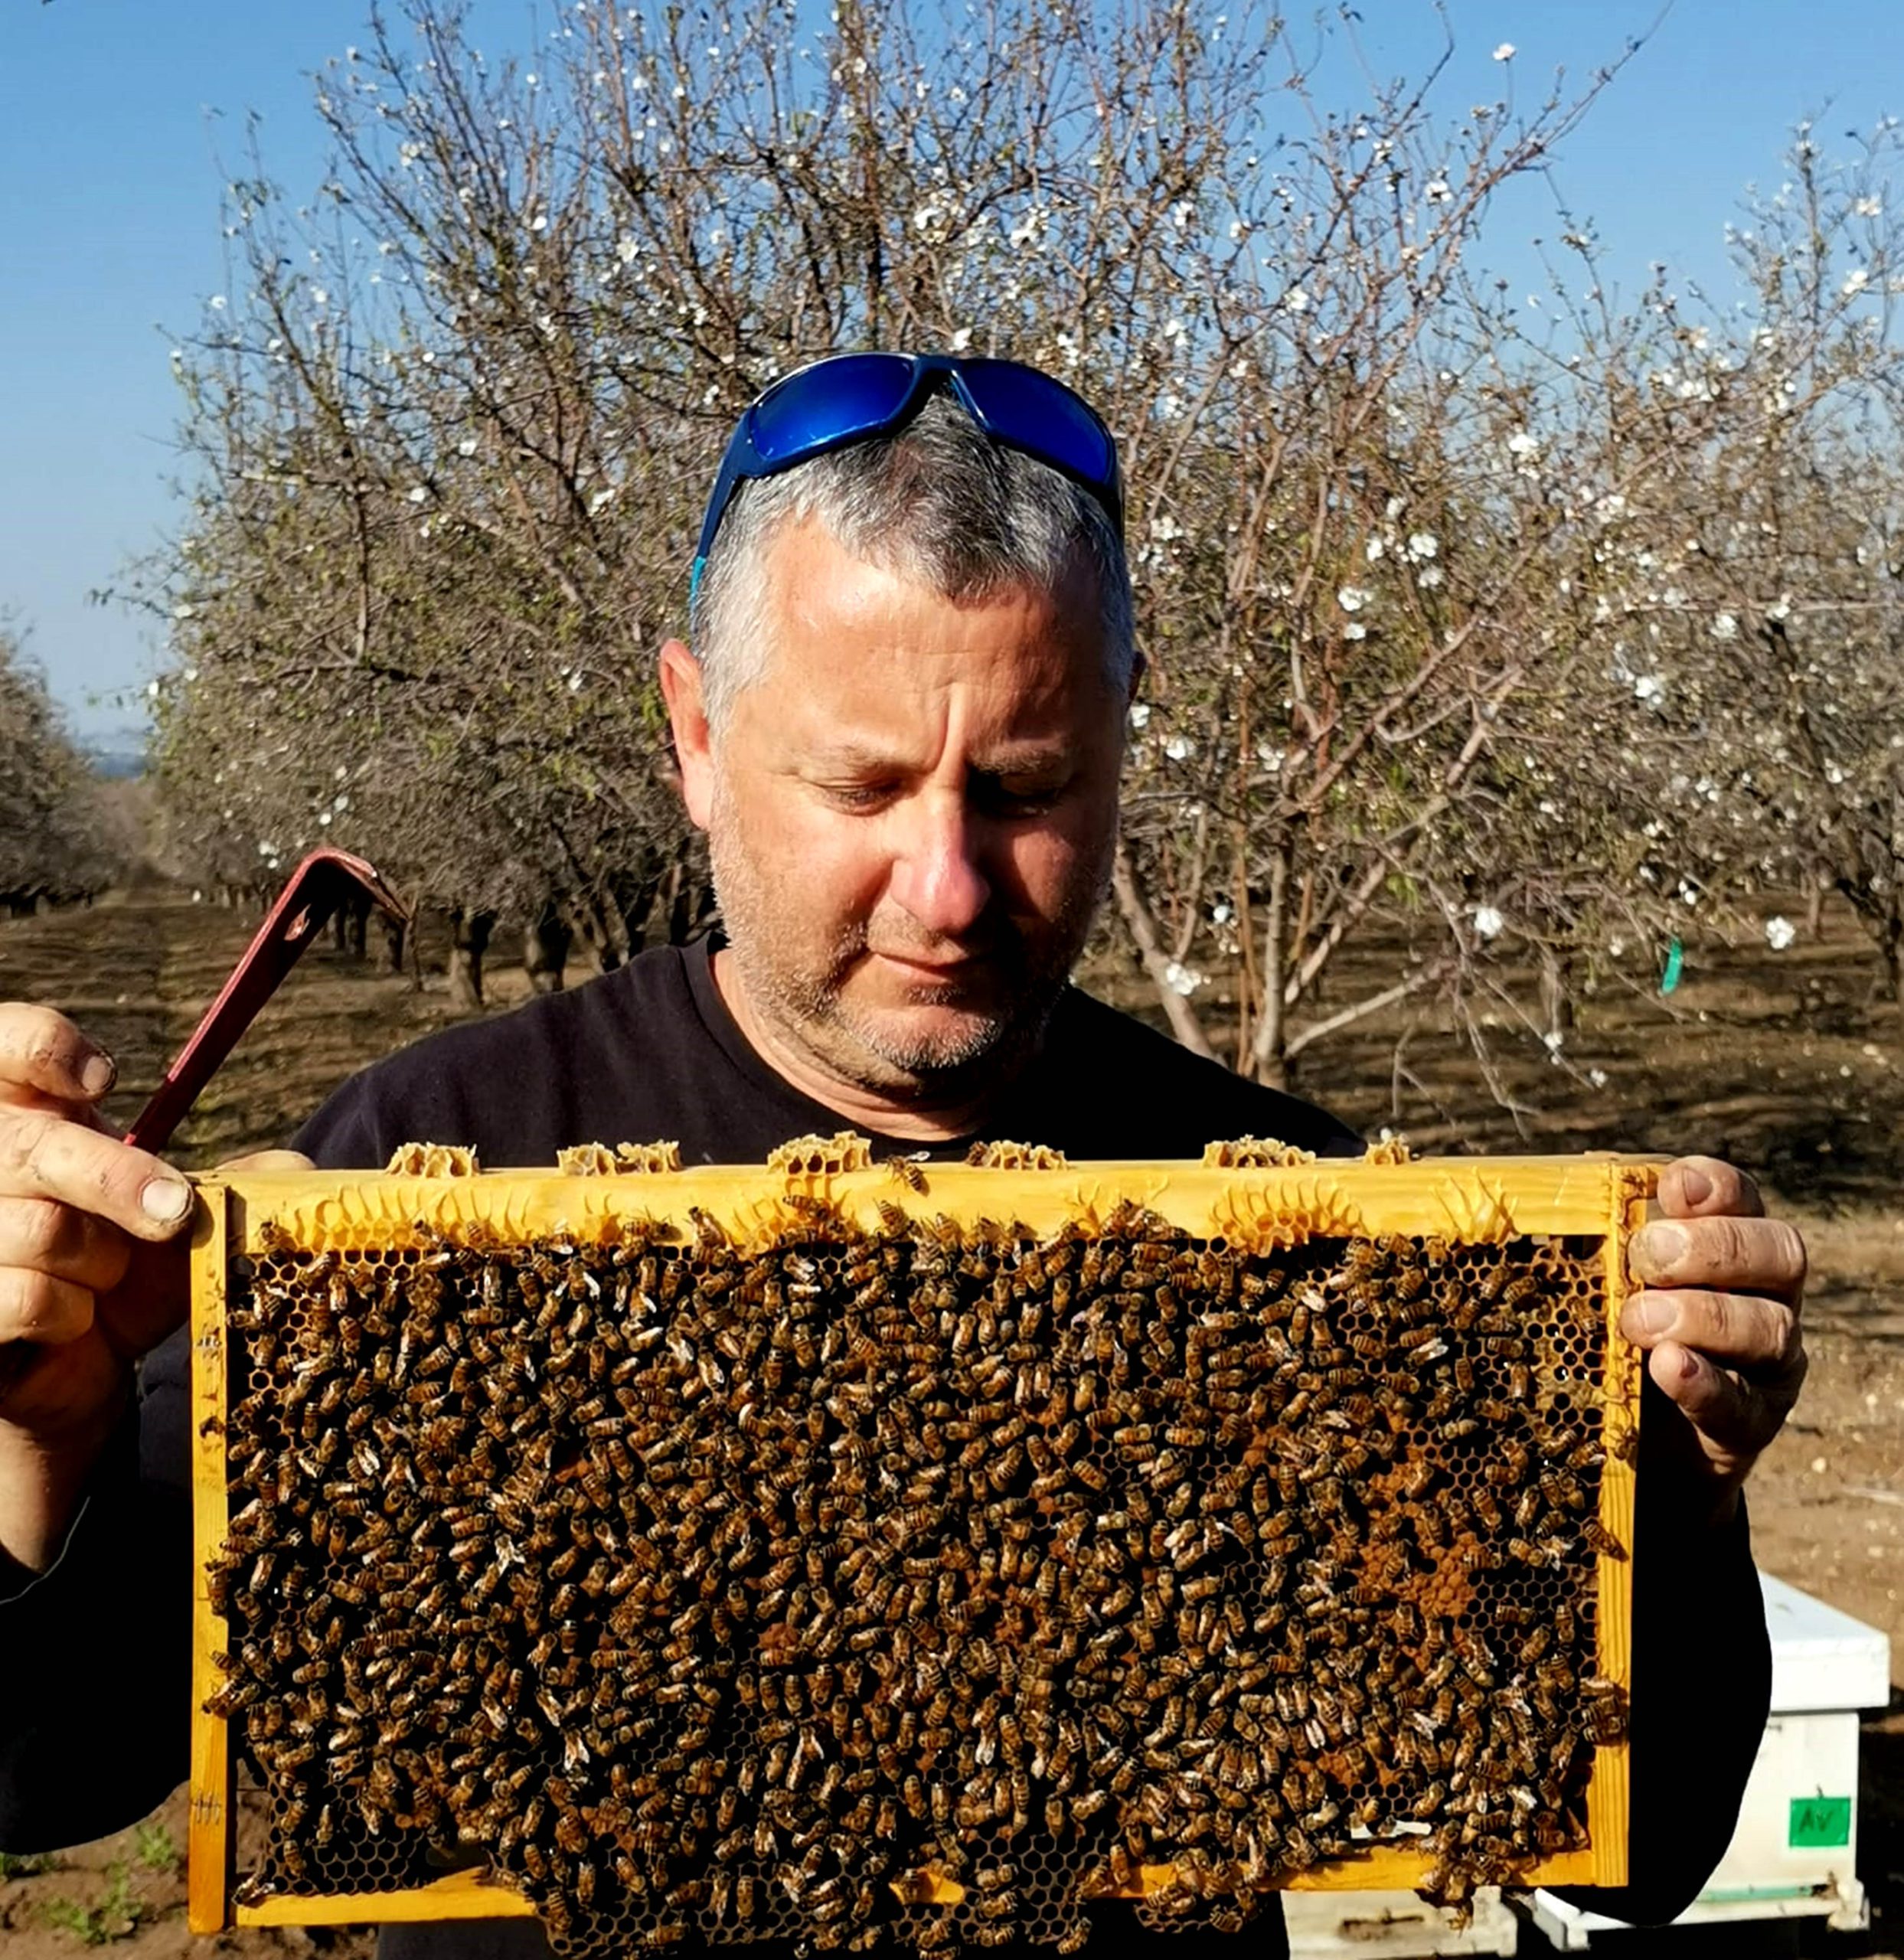 יו"ר ארגון מגדלי הדבורים דורון לבנה מכפר ביל"ו: ייבוא דבש ללא מכס רגע לפני ראש השנה – הינו צעד פופוליסטי ומצגת שווא שקרית להורדת יוקר המחייה